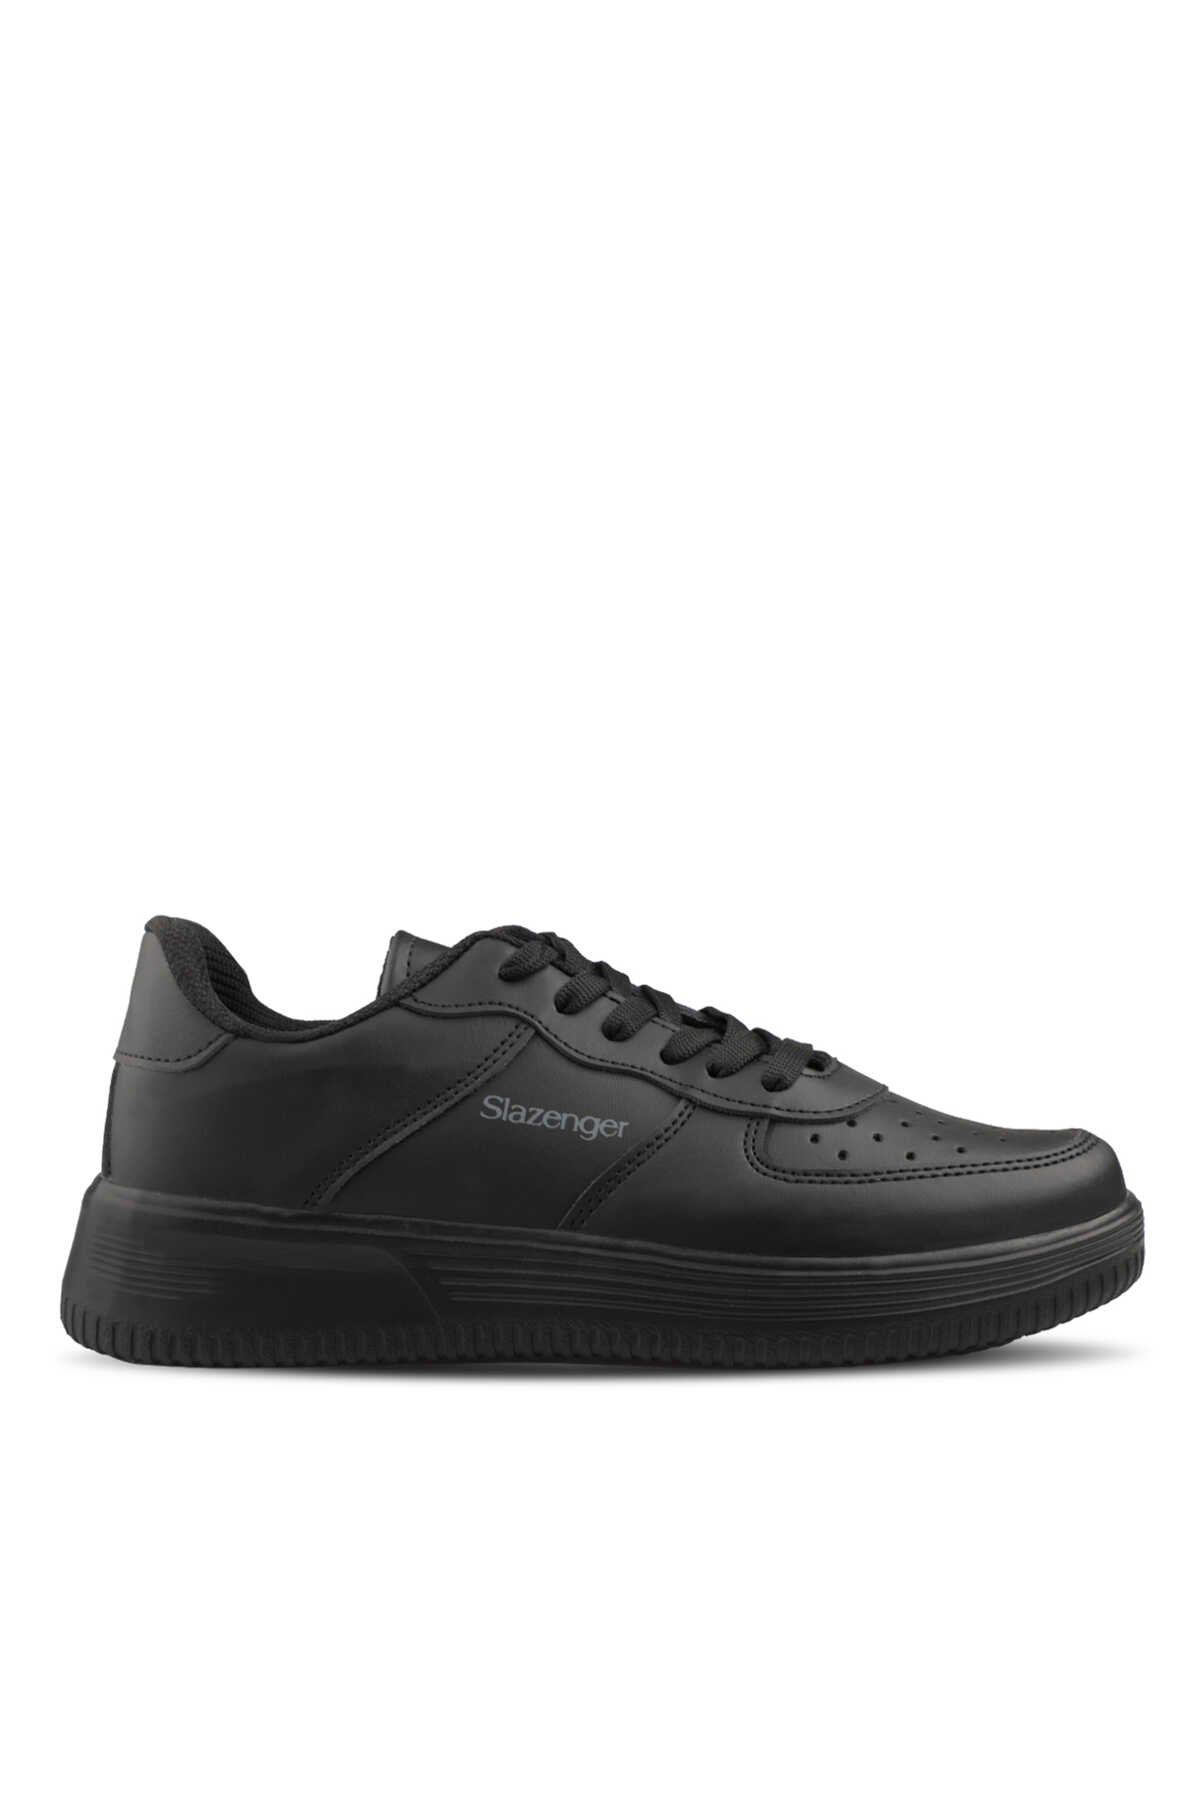 Slazenger - Slazenger EKUA Sneaker Erkek Ayakkabı Siyah / Siyah